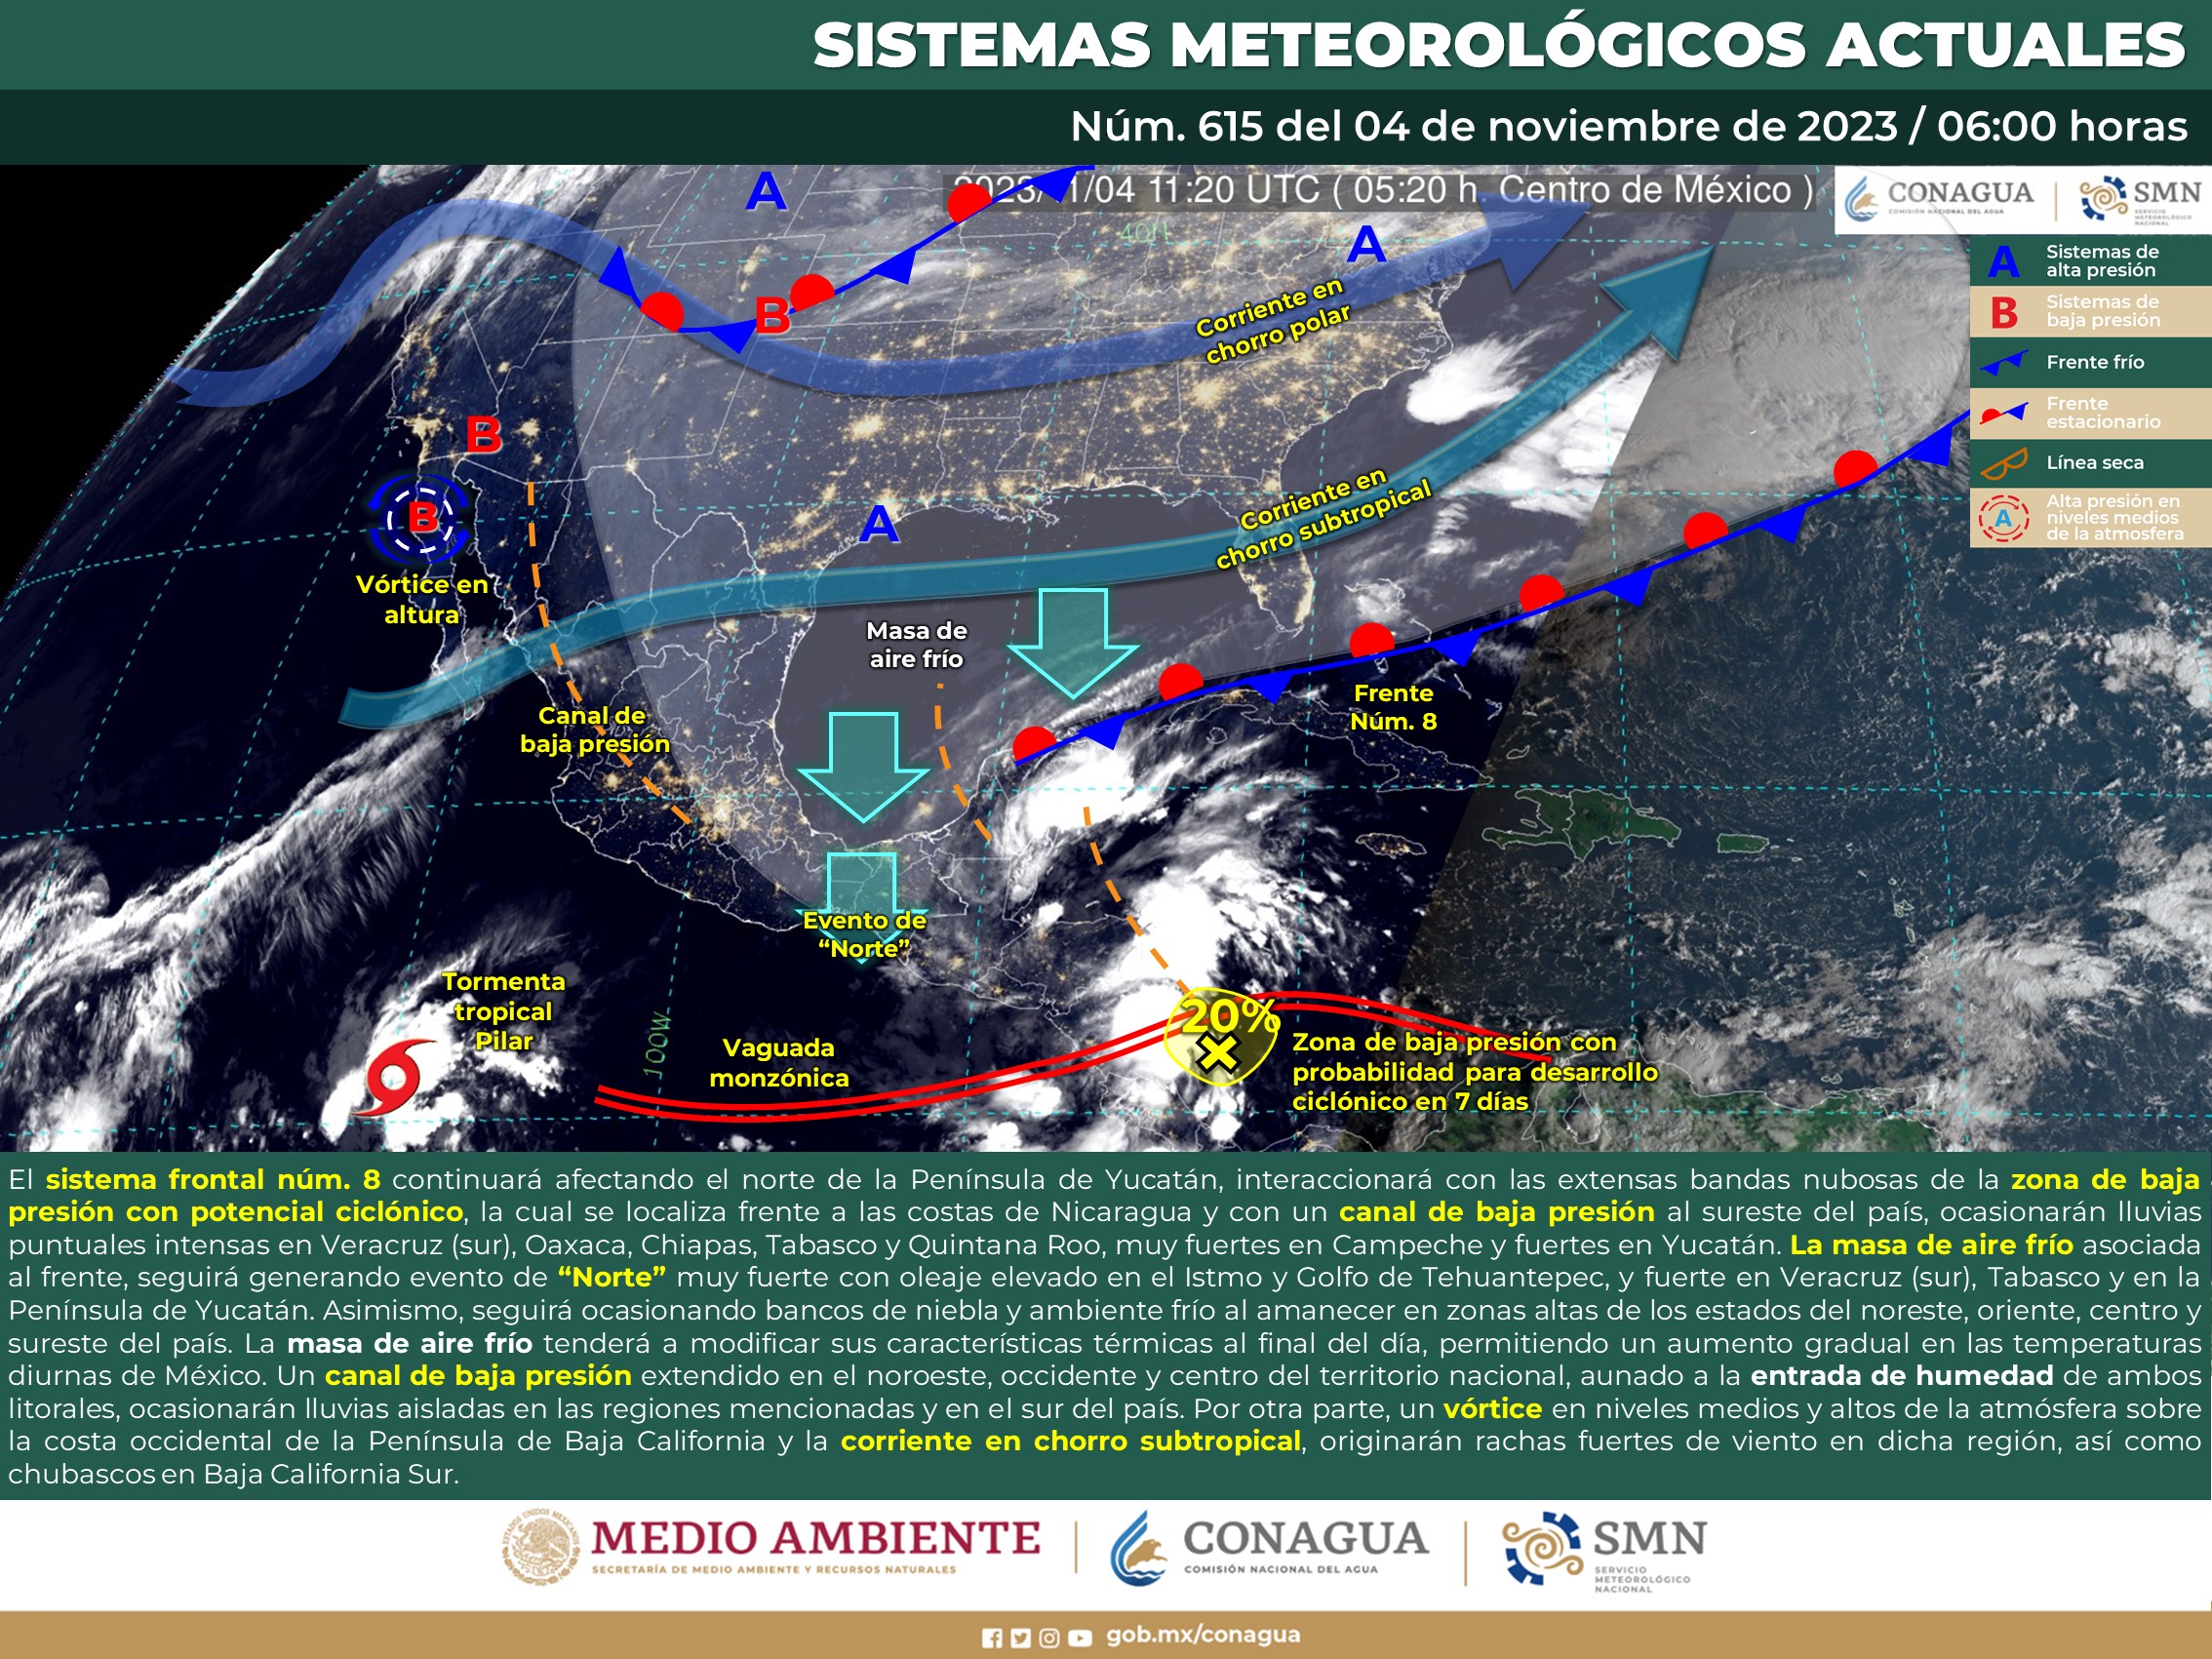 SMN prevé lluvias intensas en el sur de Veracruz, Oaxaca, Chiapas Tabasco y Quintana Ro